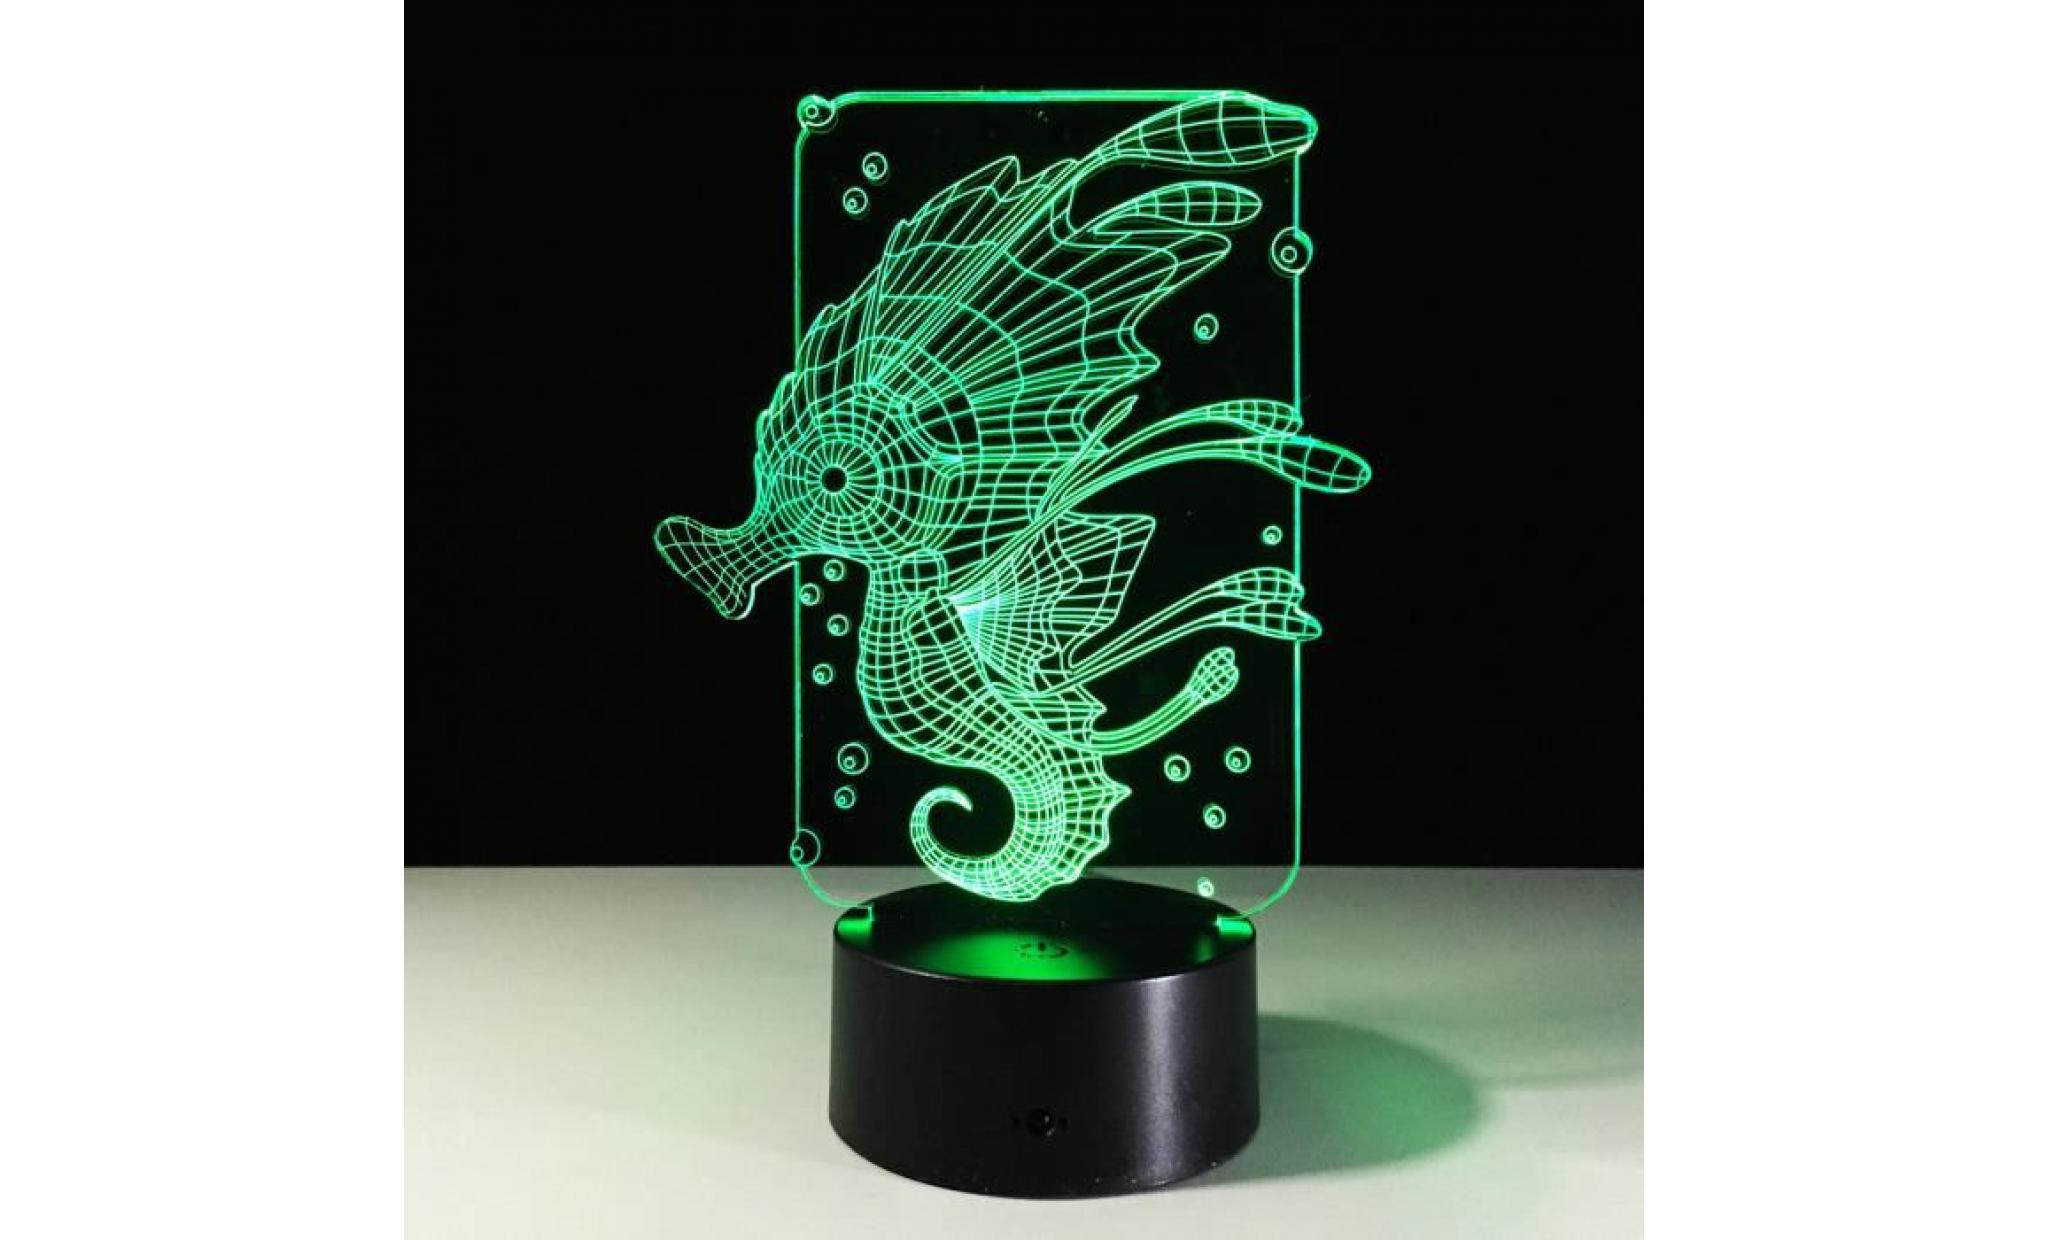 seahorse 3d night light table lampe de bureau 7 couleurs 3d lumières illusion optique wo572 pas cher